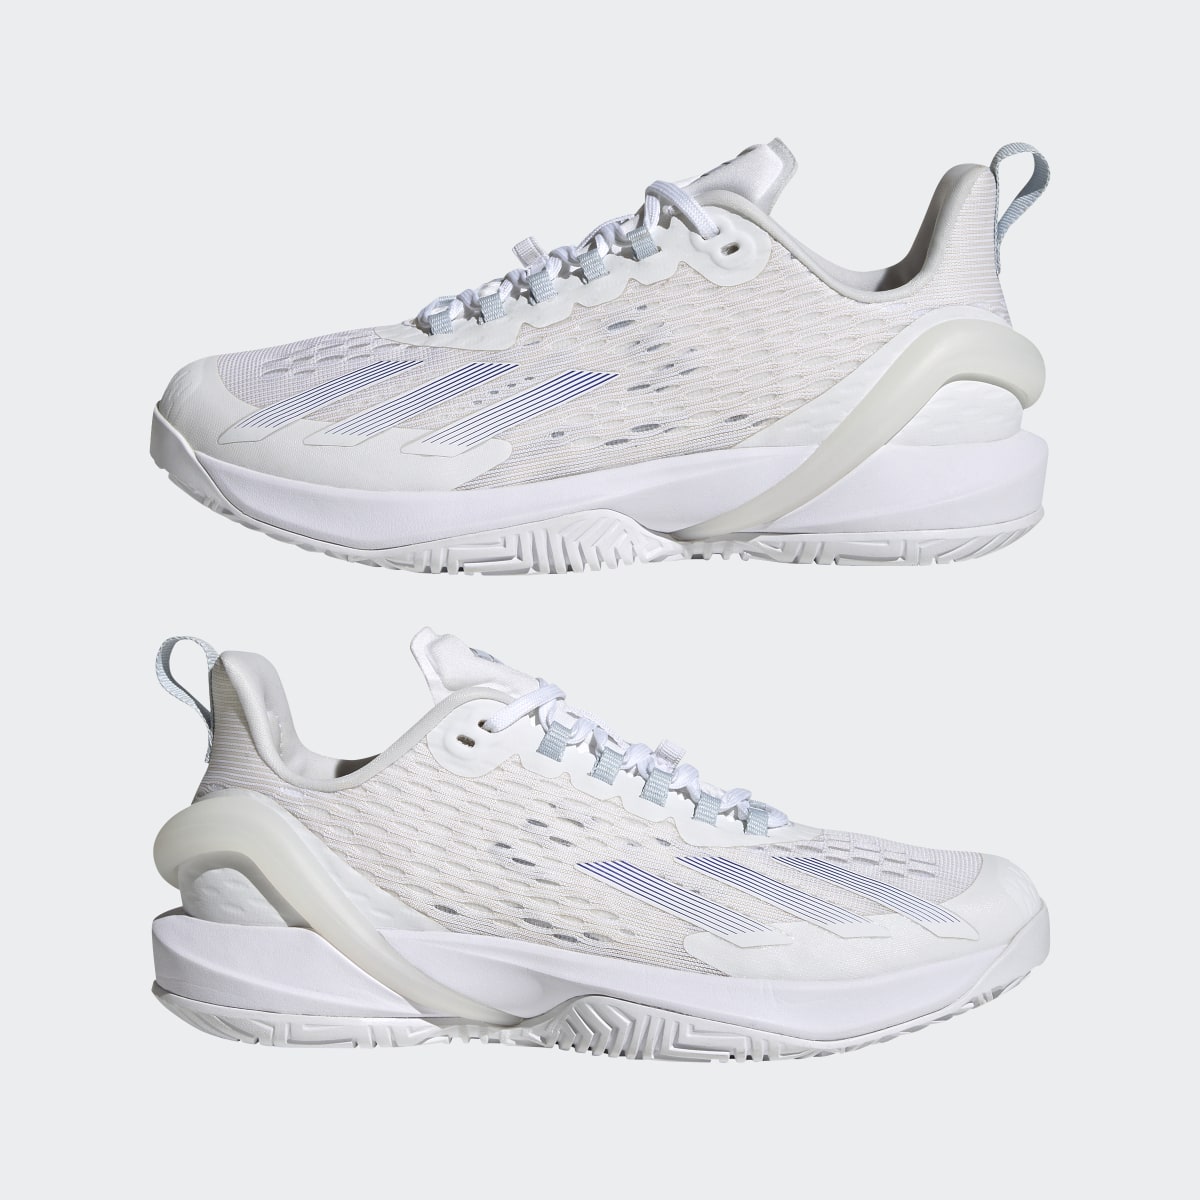 Adidas adizero Cybersonic Tennis Shoes. 11